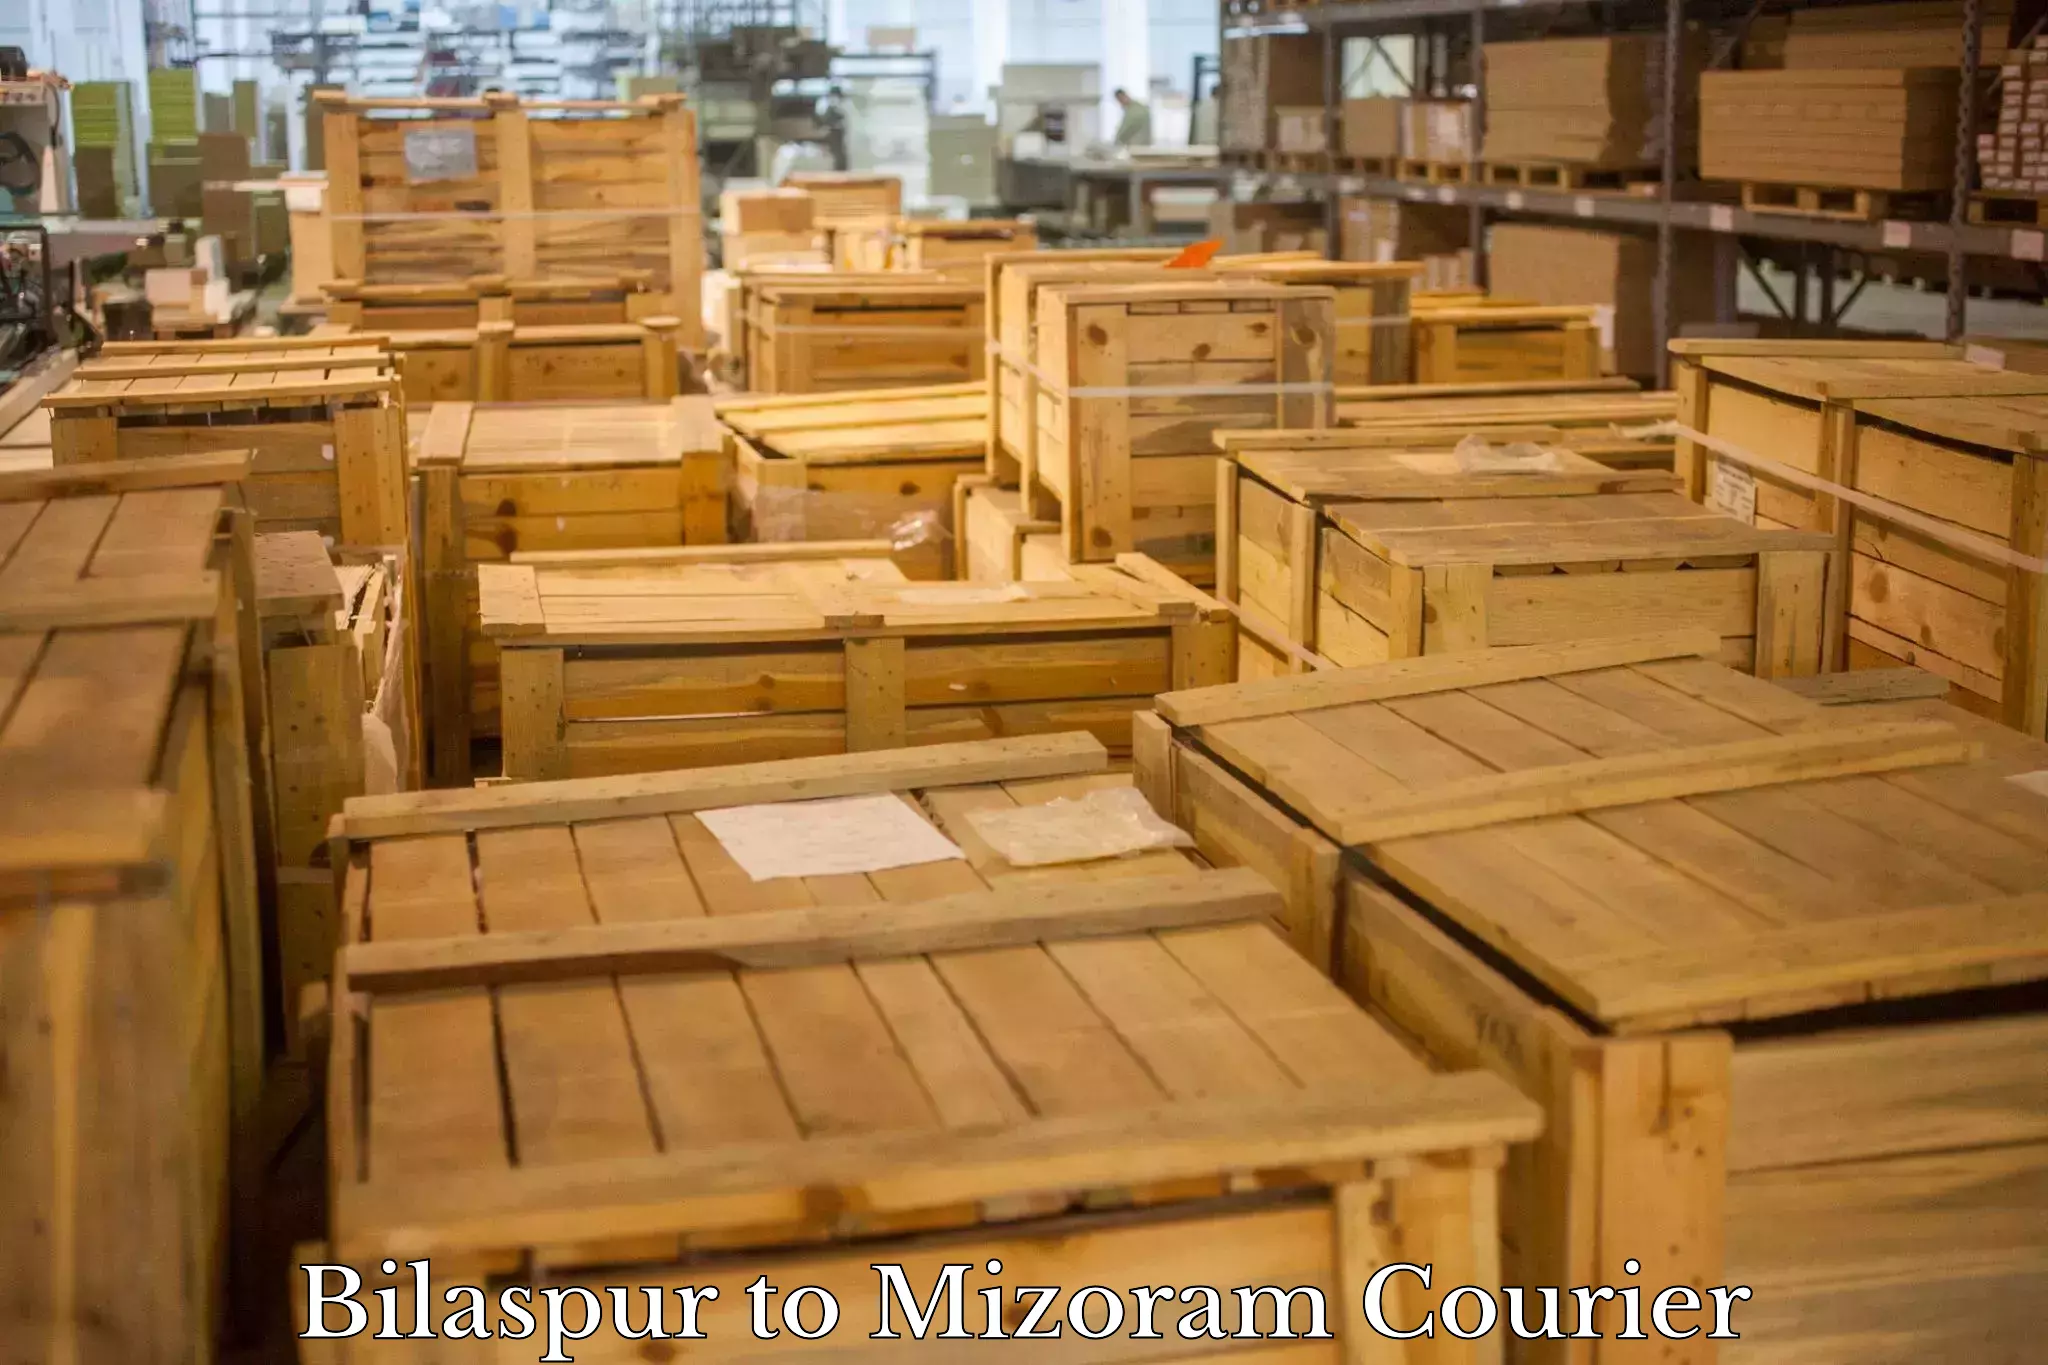 Efficient freight service Bilaspur to Aizawl